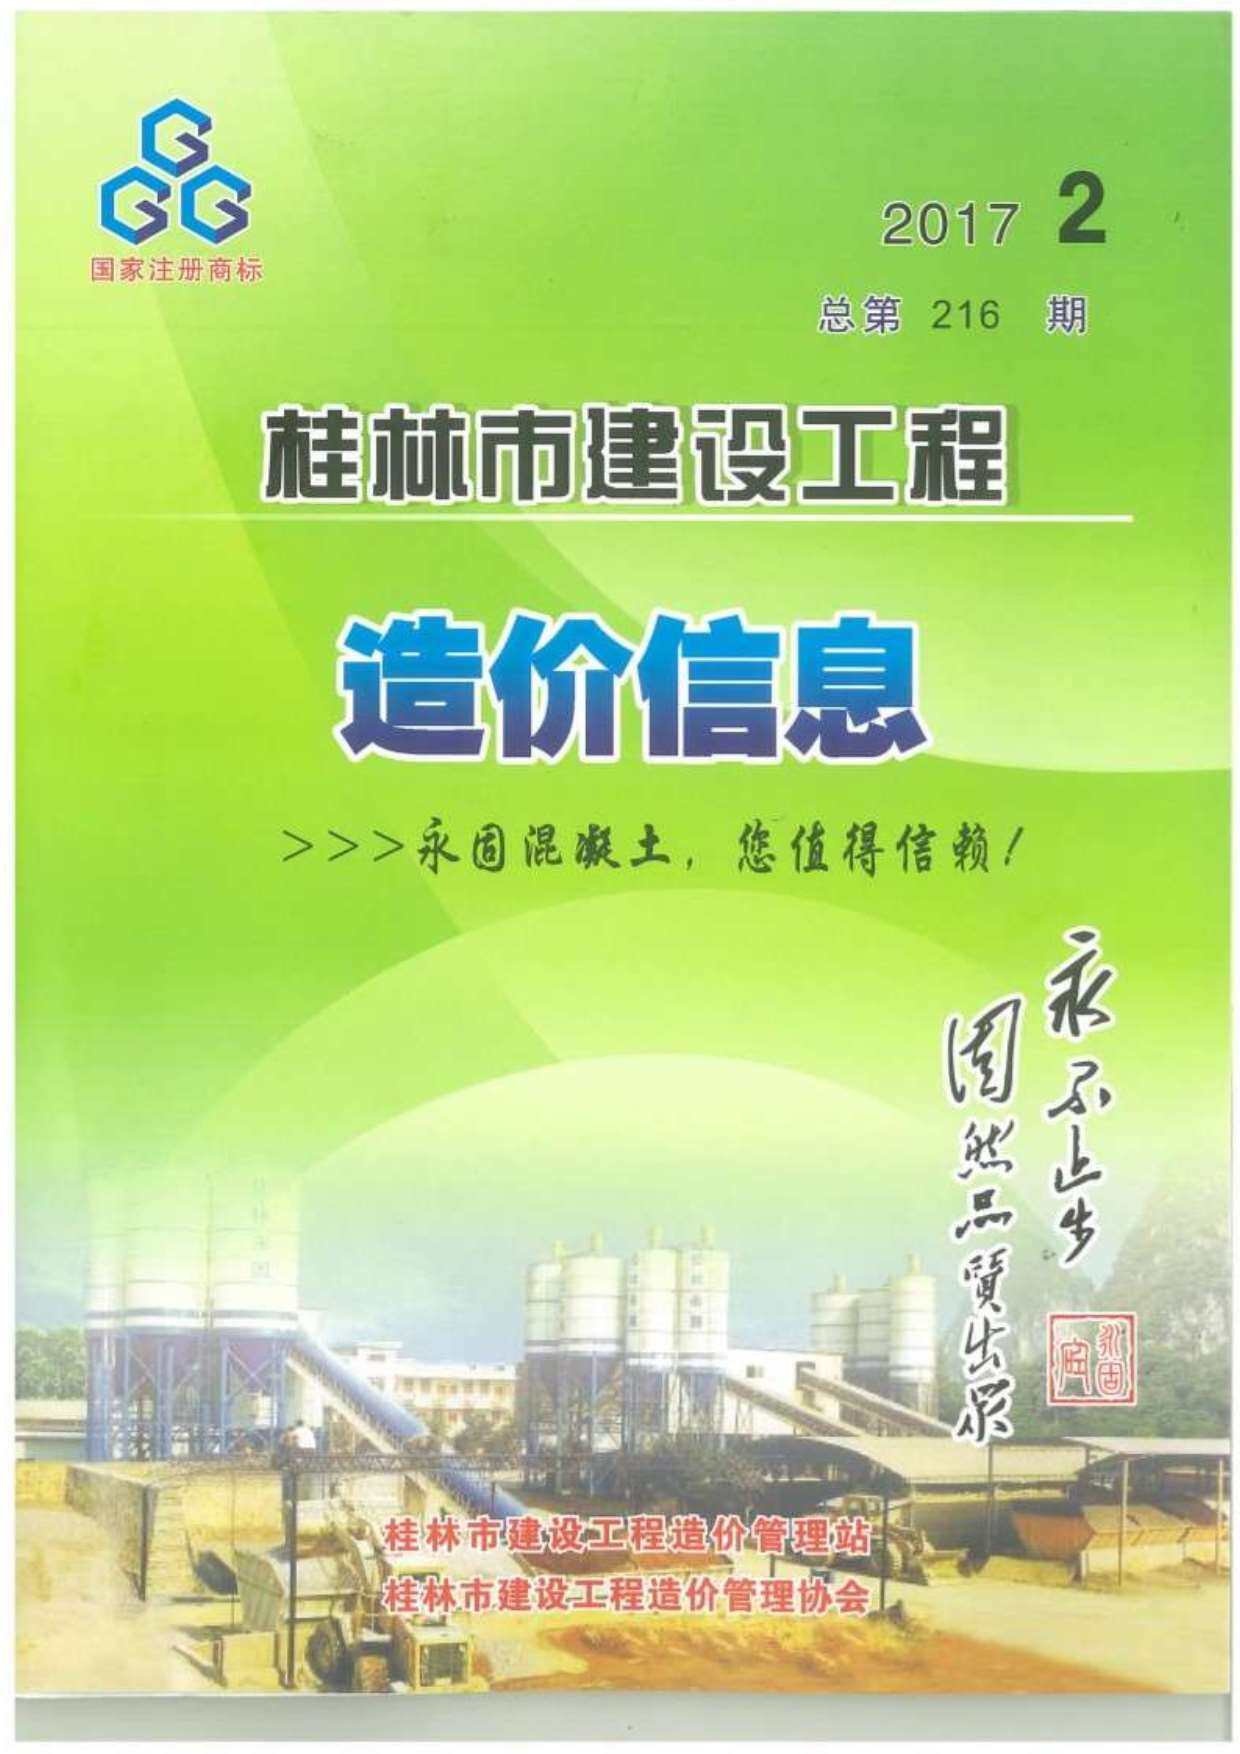 桂林市2017年2月工程造价信息期刊